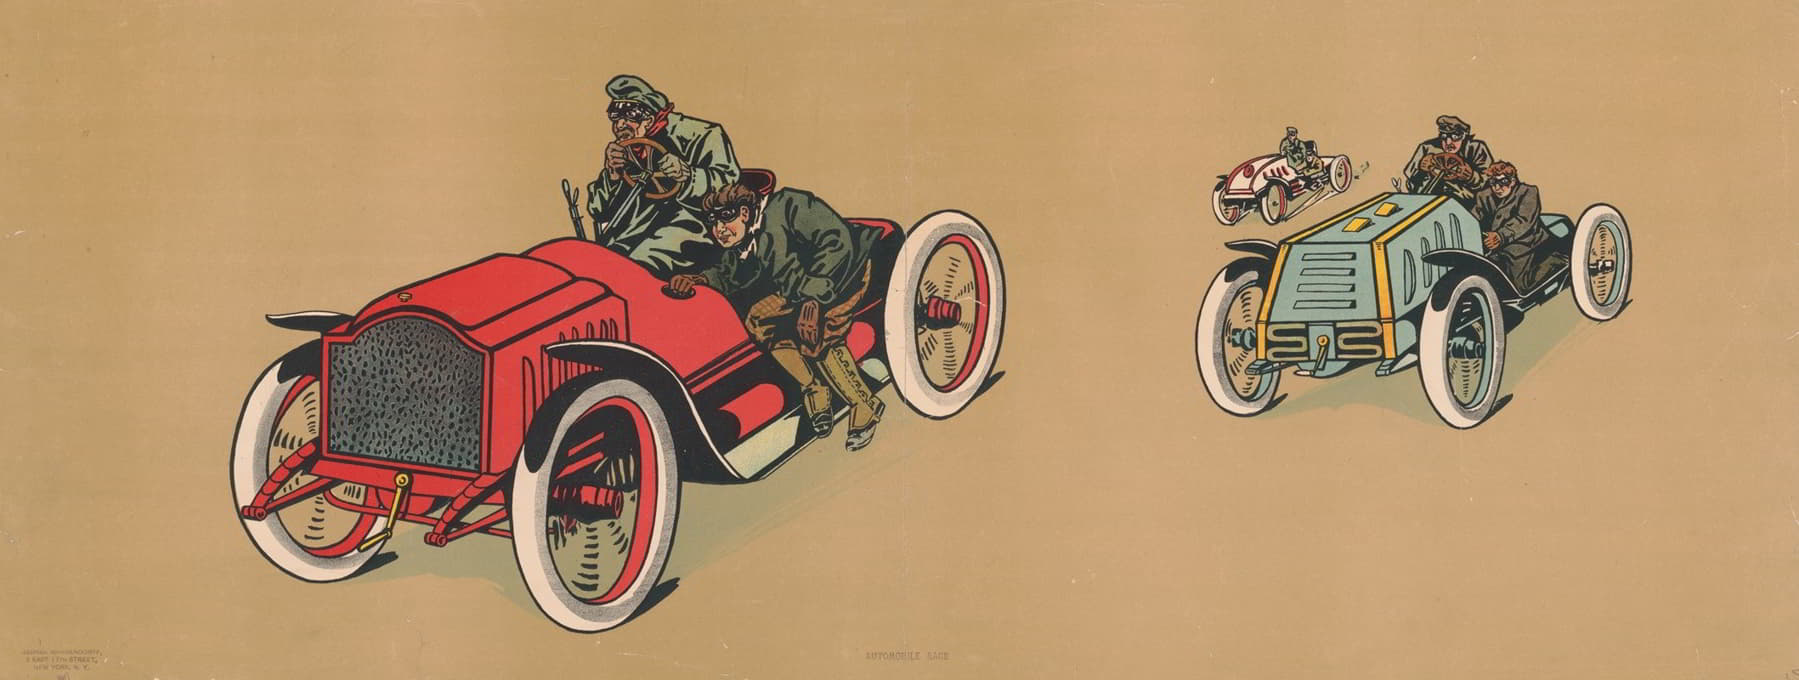 George Markendorff - Automobile race